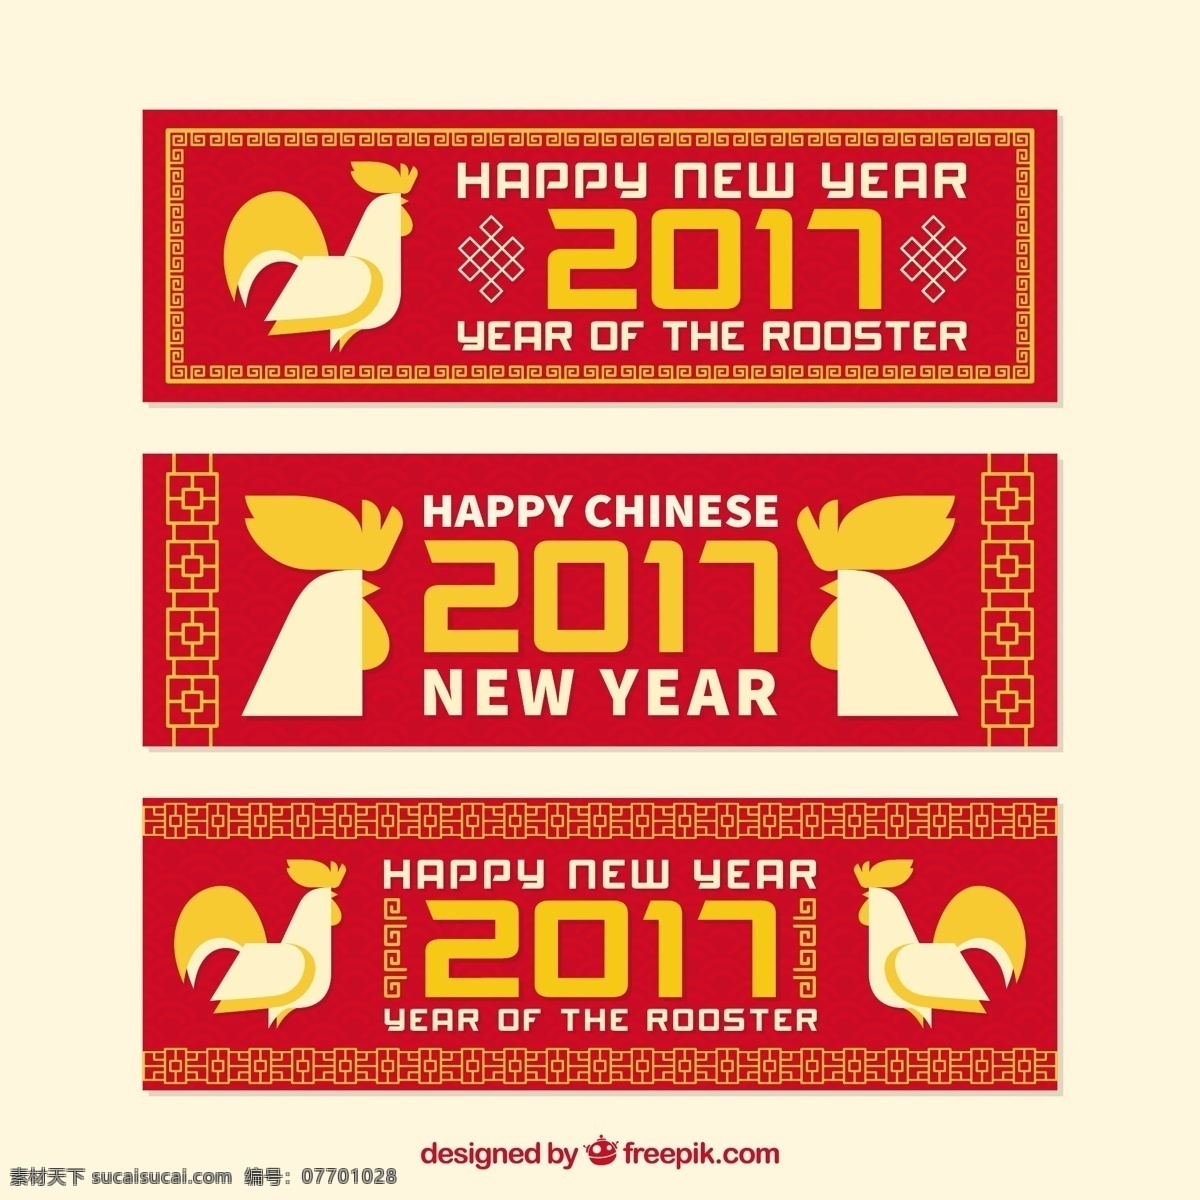 中国 新年 公鸡 三 旗 旗帜 新的一年 新年快乐 2017方 几何 动物 中国新年 横幅 庆祝 快乐 节日 活动 节日快乐 平 新的公鸡